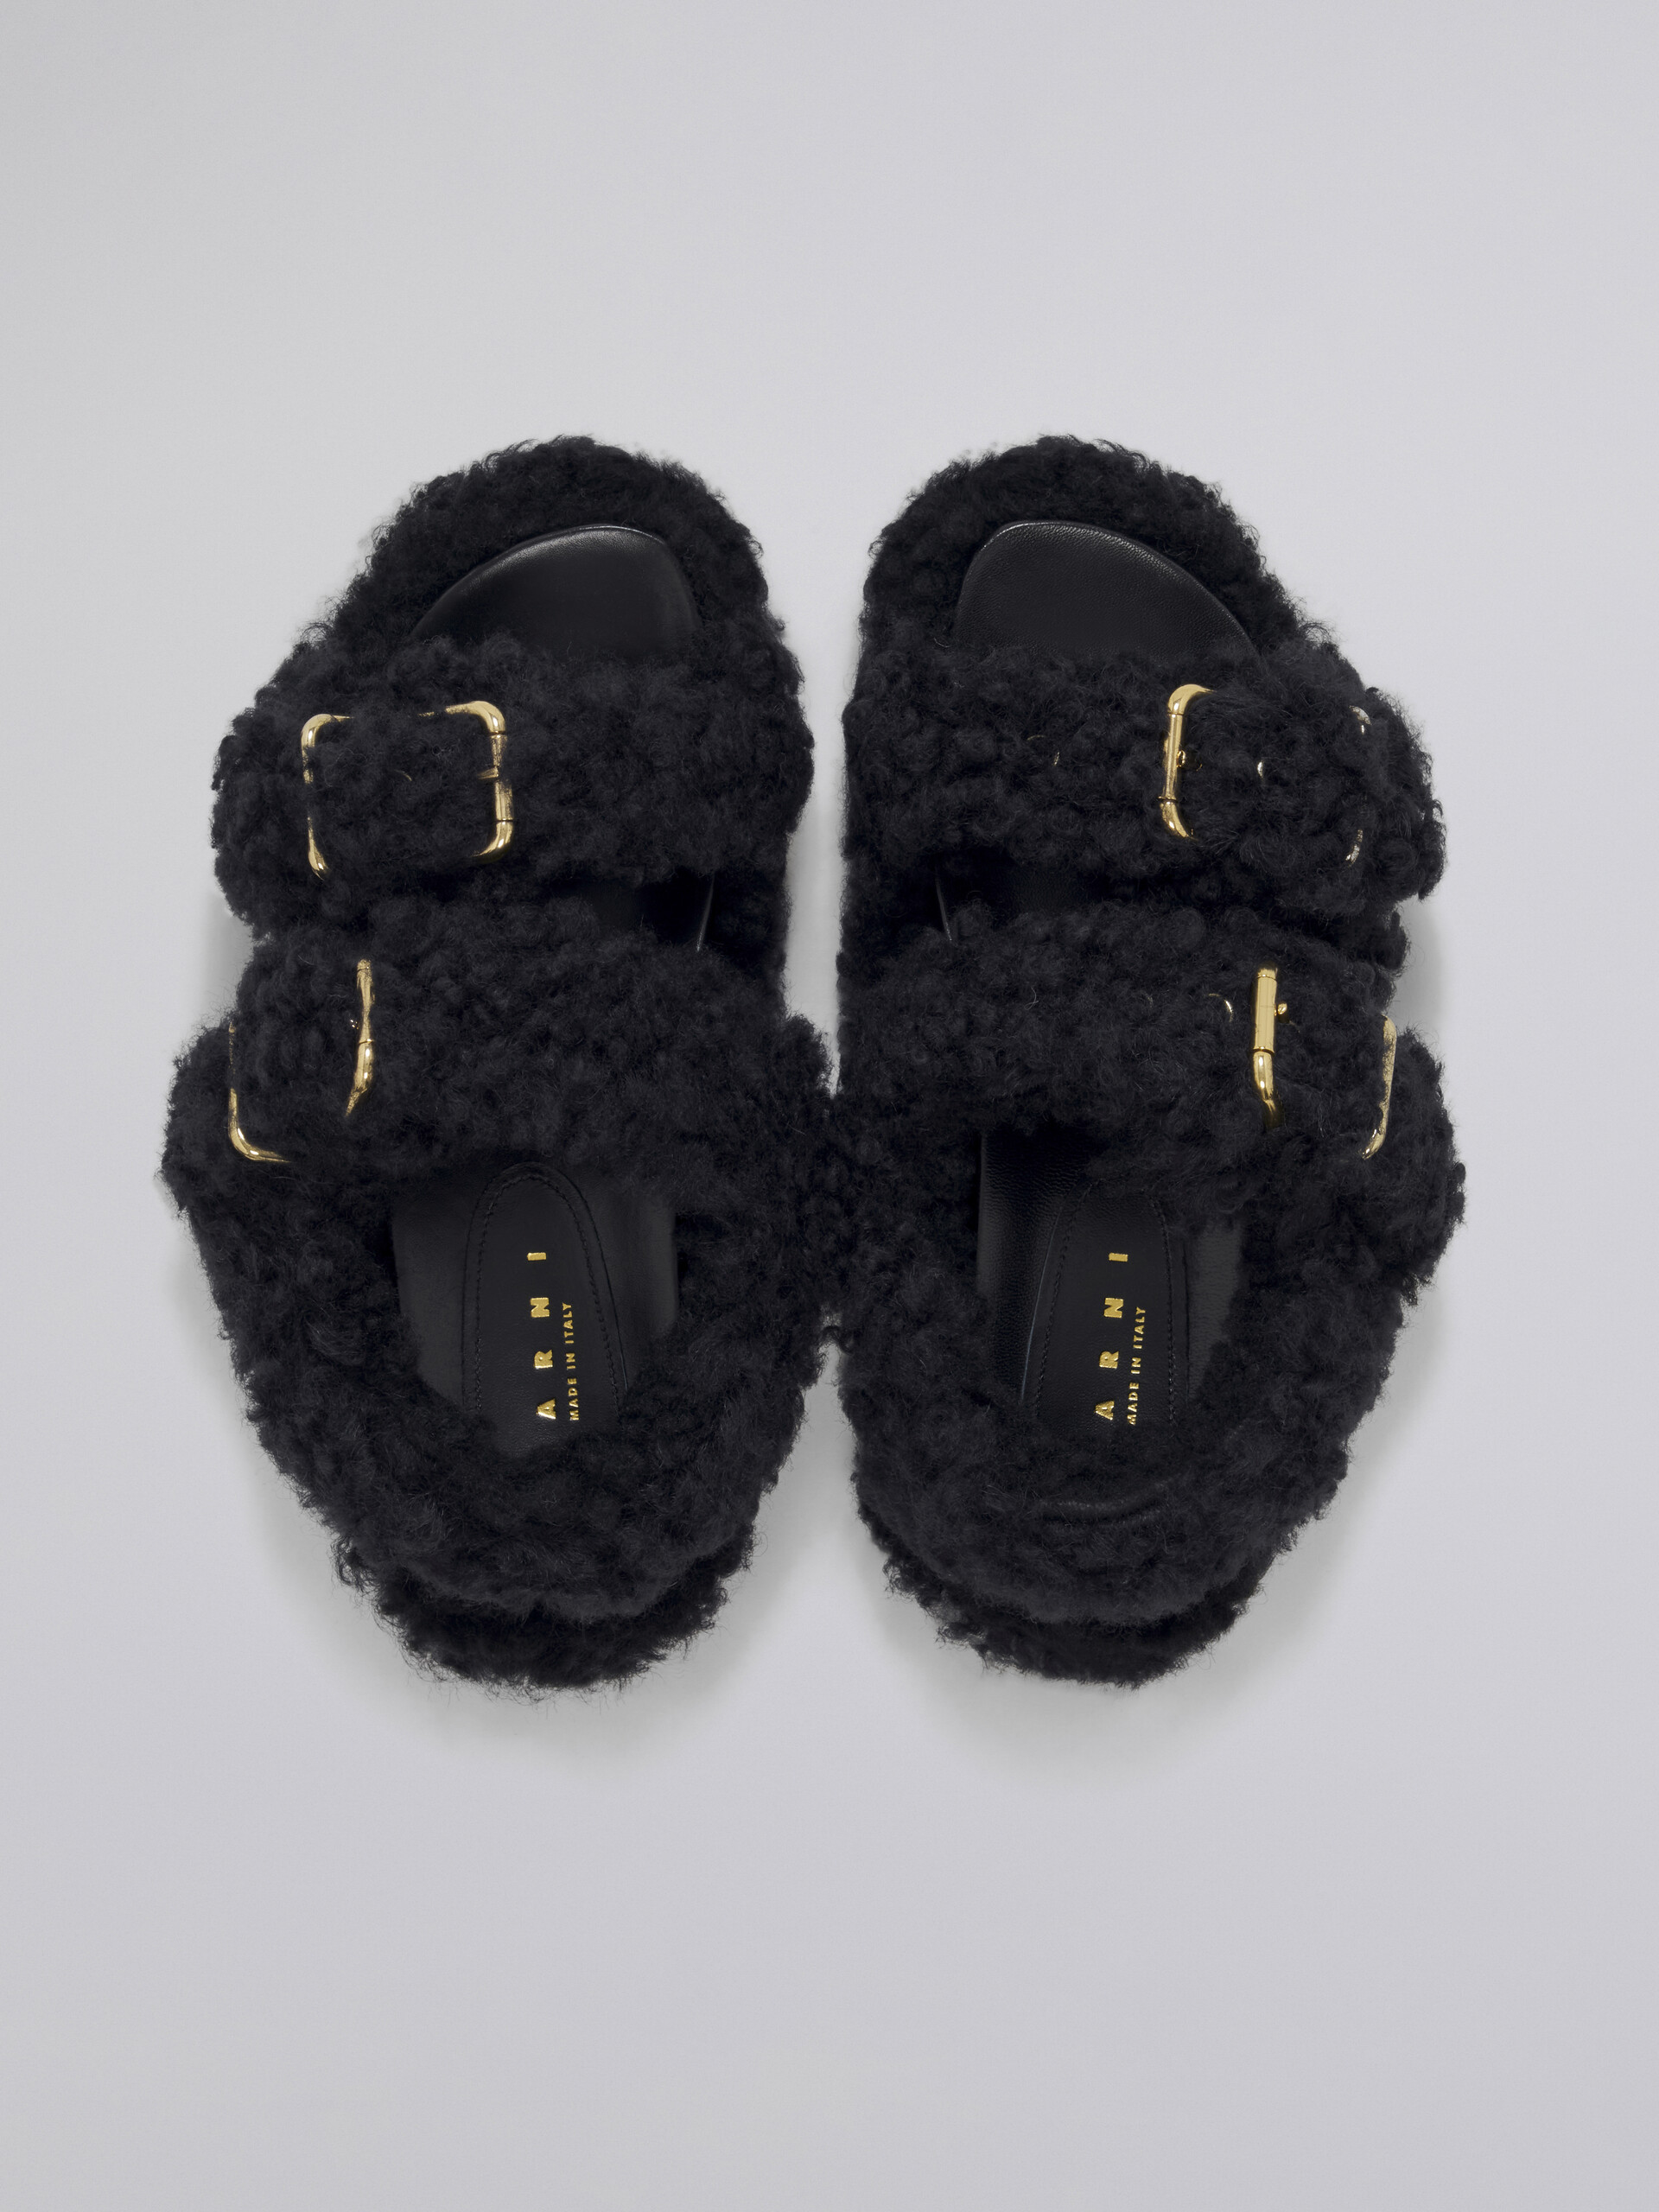 Fußbett-Sandale mit Doppelschnalle aus schwarzem Shearling - Sandalen - Image 4